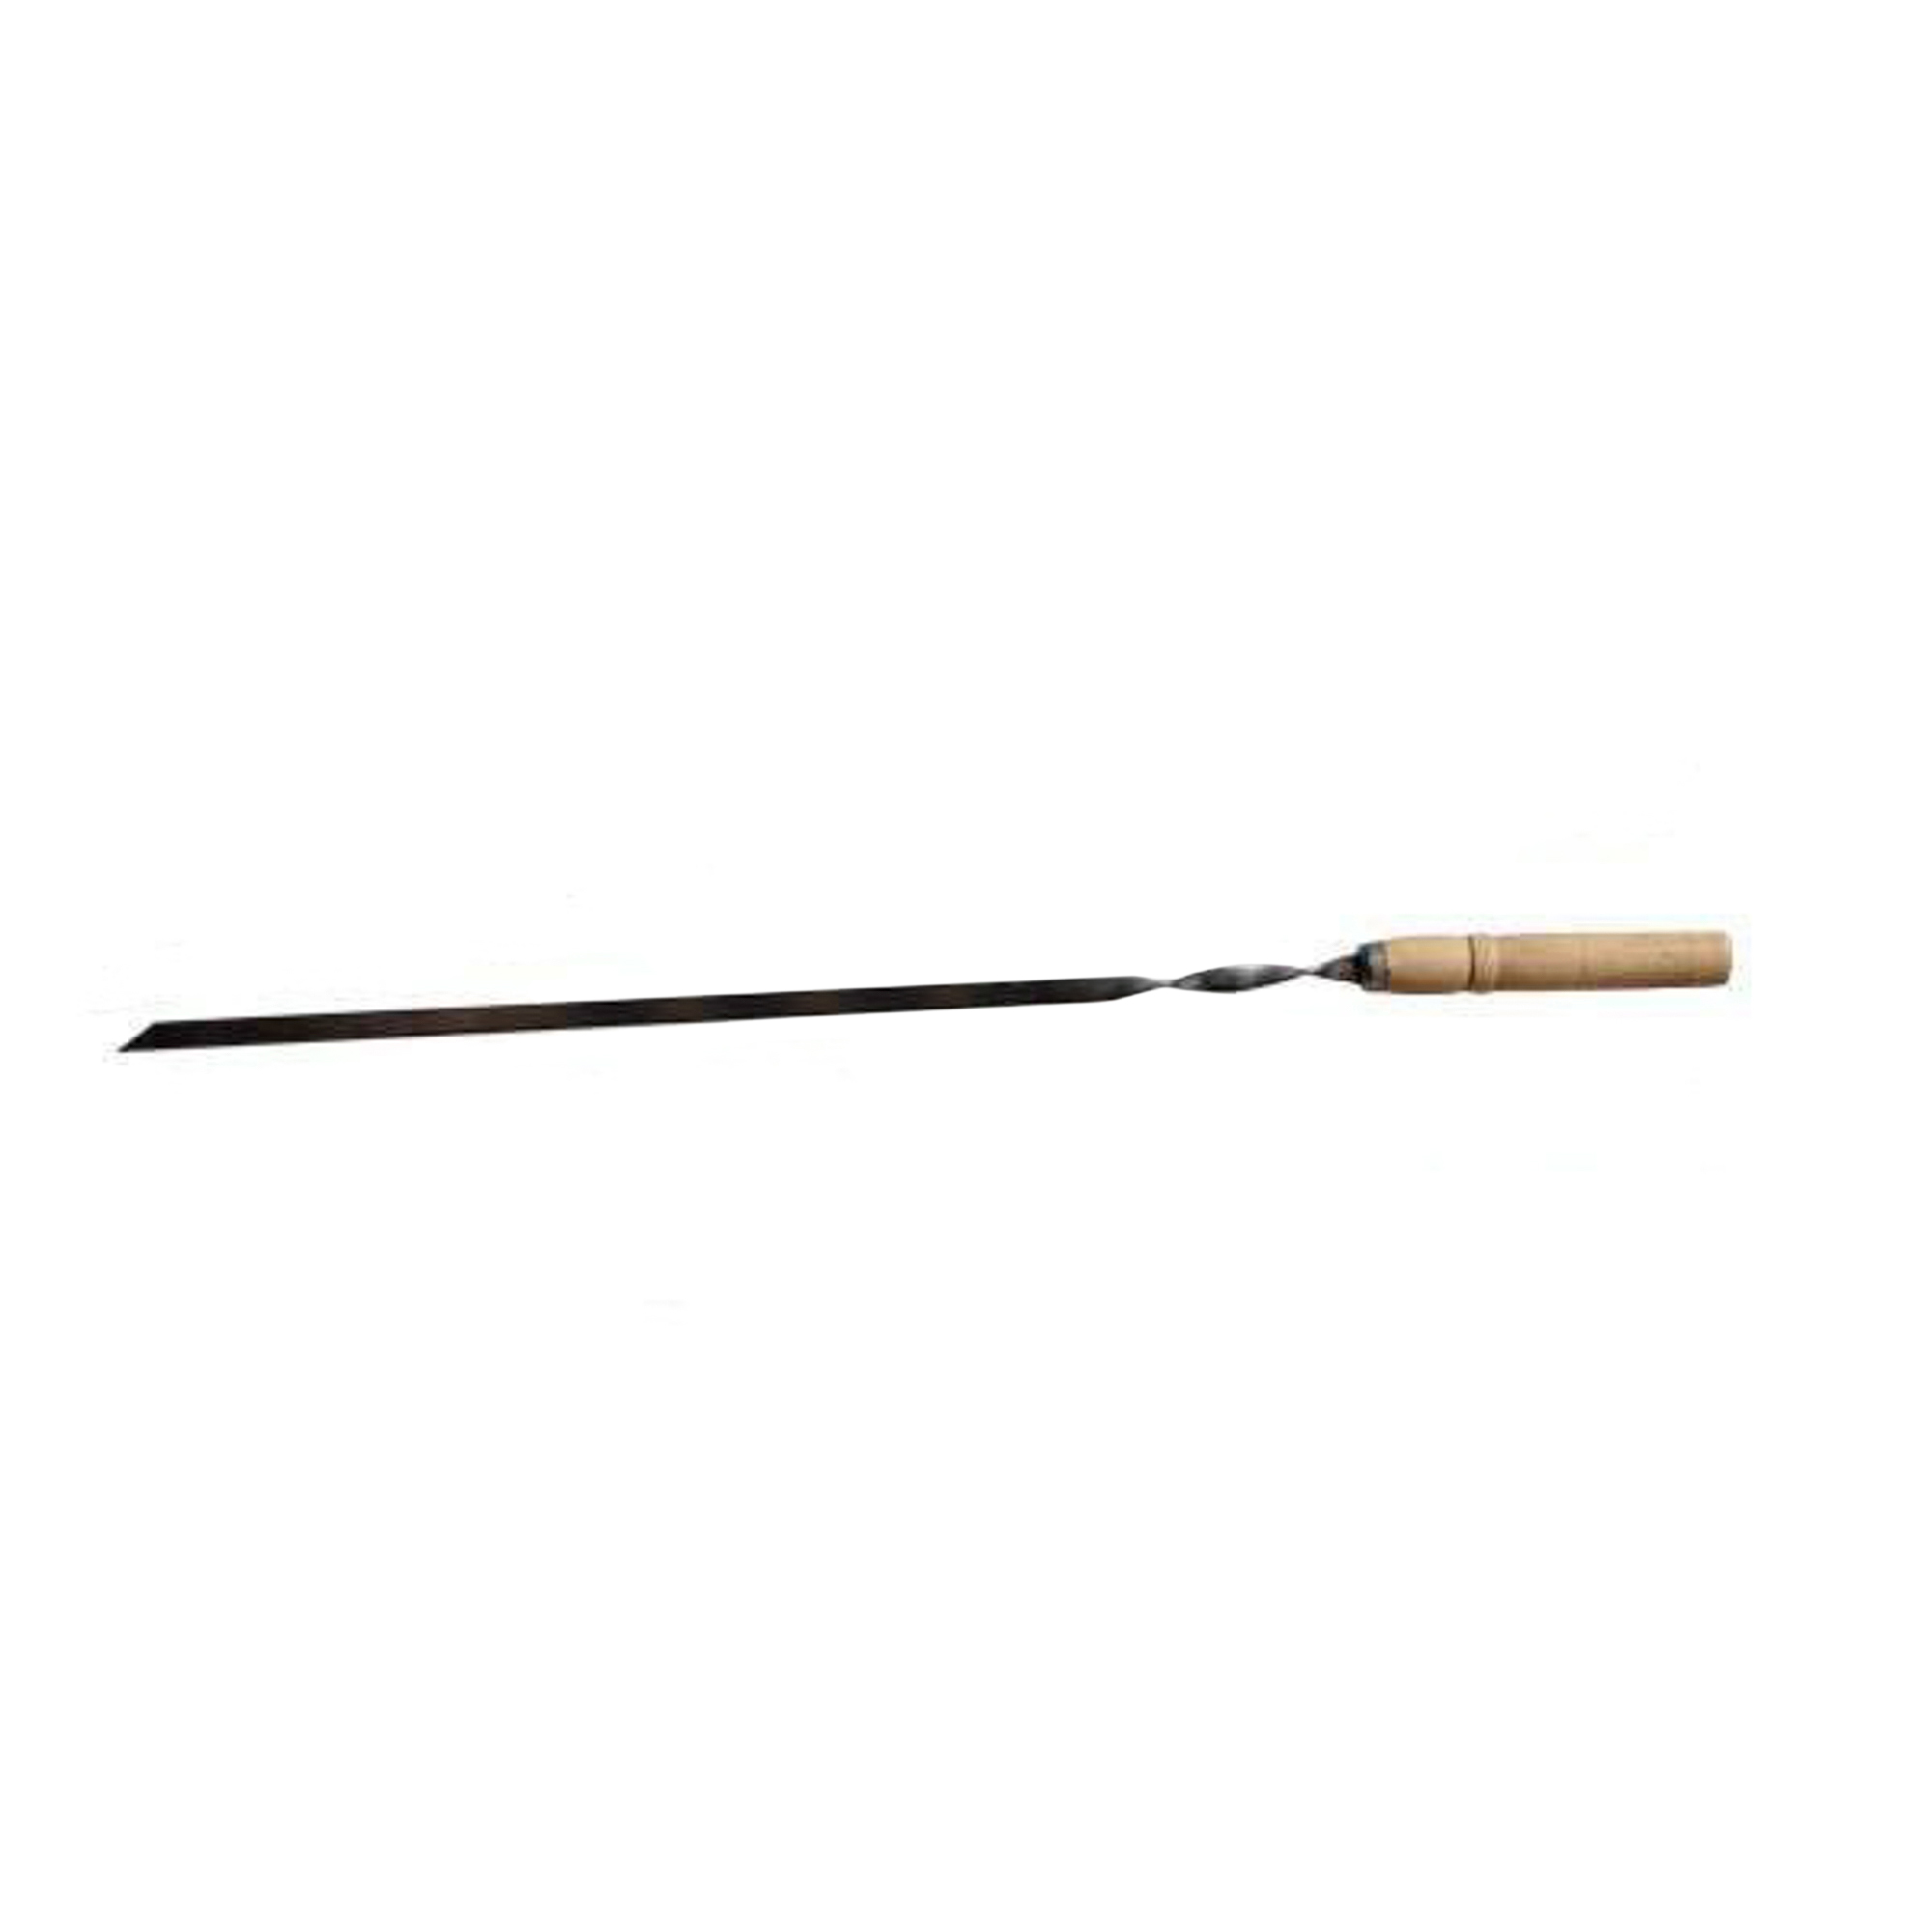 Шампур металлический Аск-38 с деревянной ручкой 55 см (14064) шампур двойной с деревянной ручкой аск 38 14065